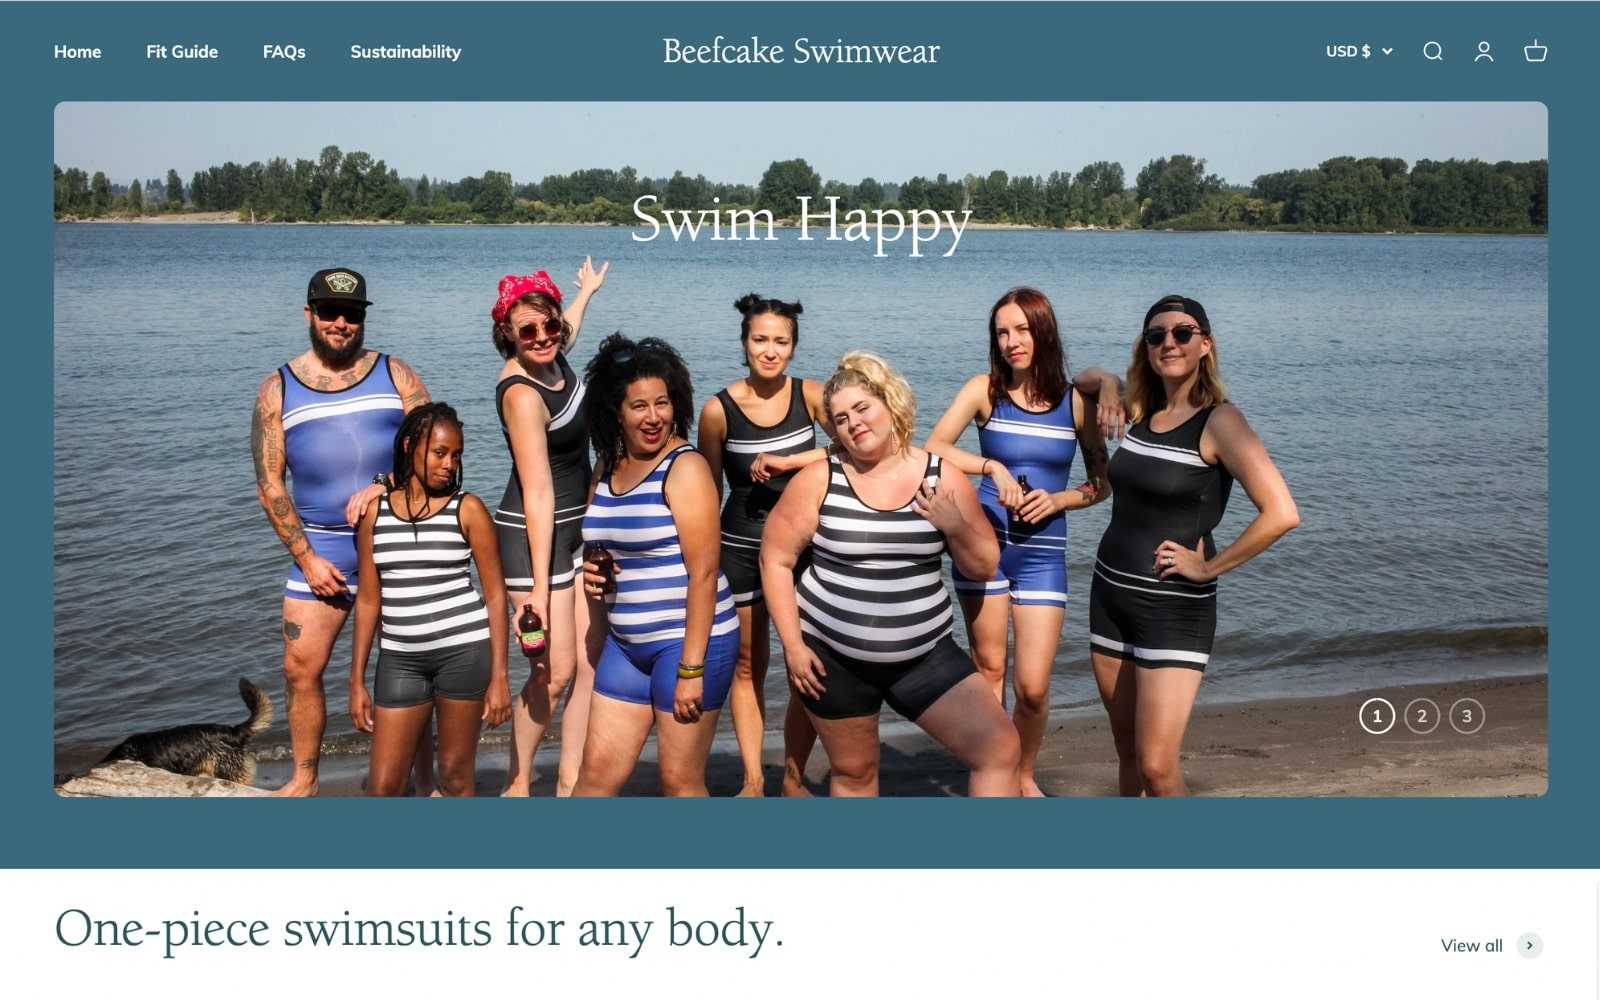 Beefcake Swimwear’s website